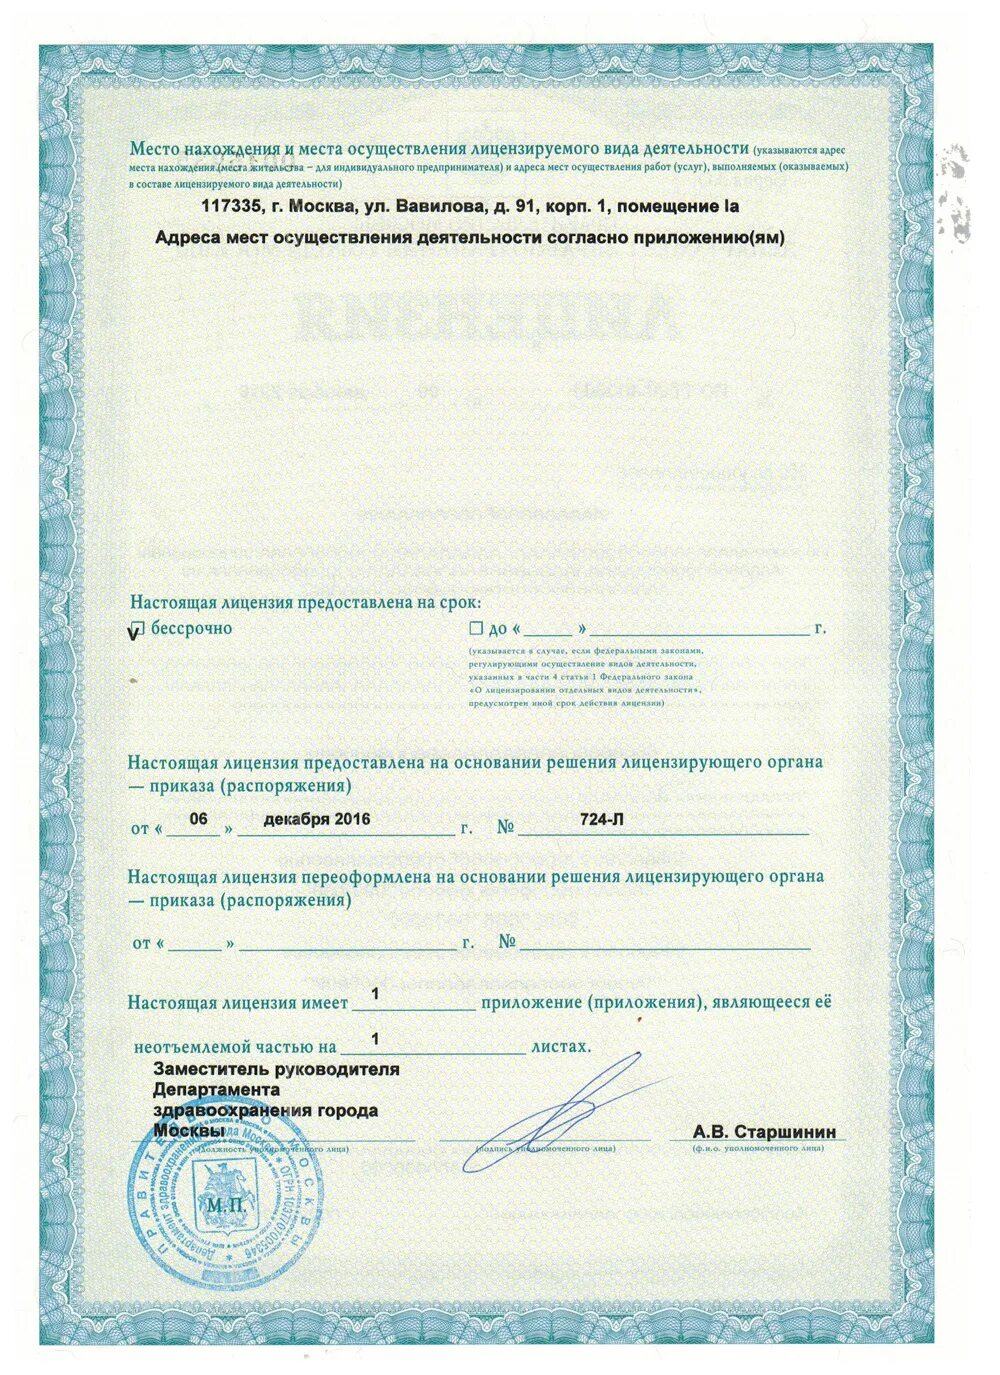 Медцентр лицензия. Медицинская лицензия. Лицензия на лазерную эпиляцию Москва. Медицинская лицензия для лазерной эпиляции. Лицензия на мед услуги для ИП.